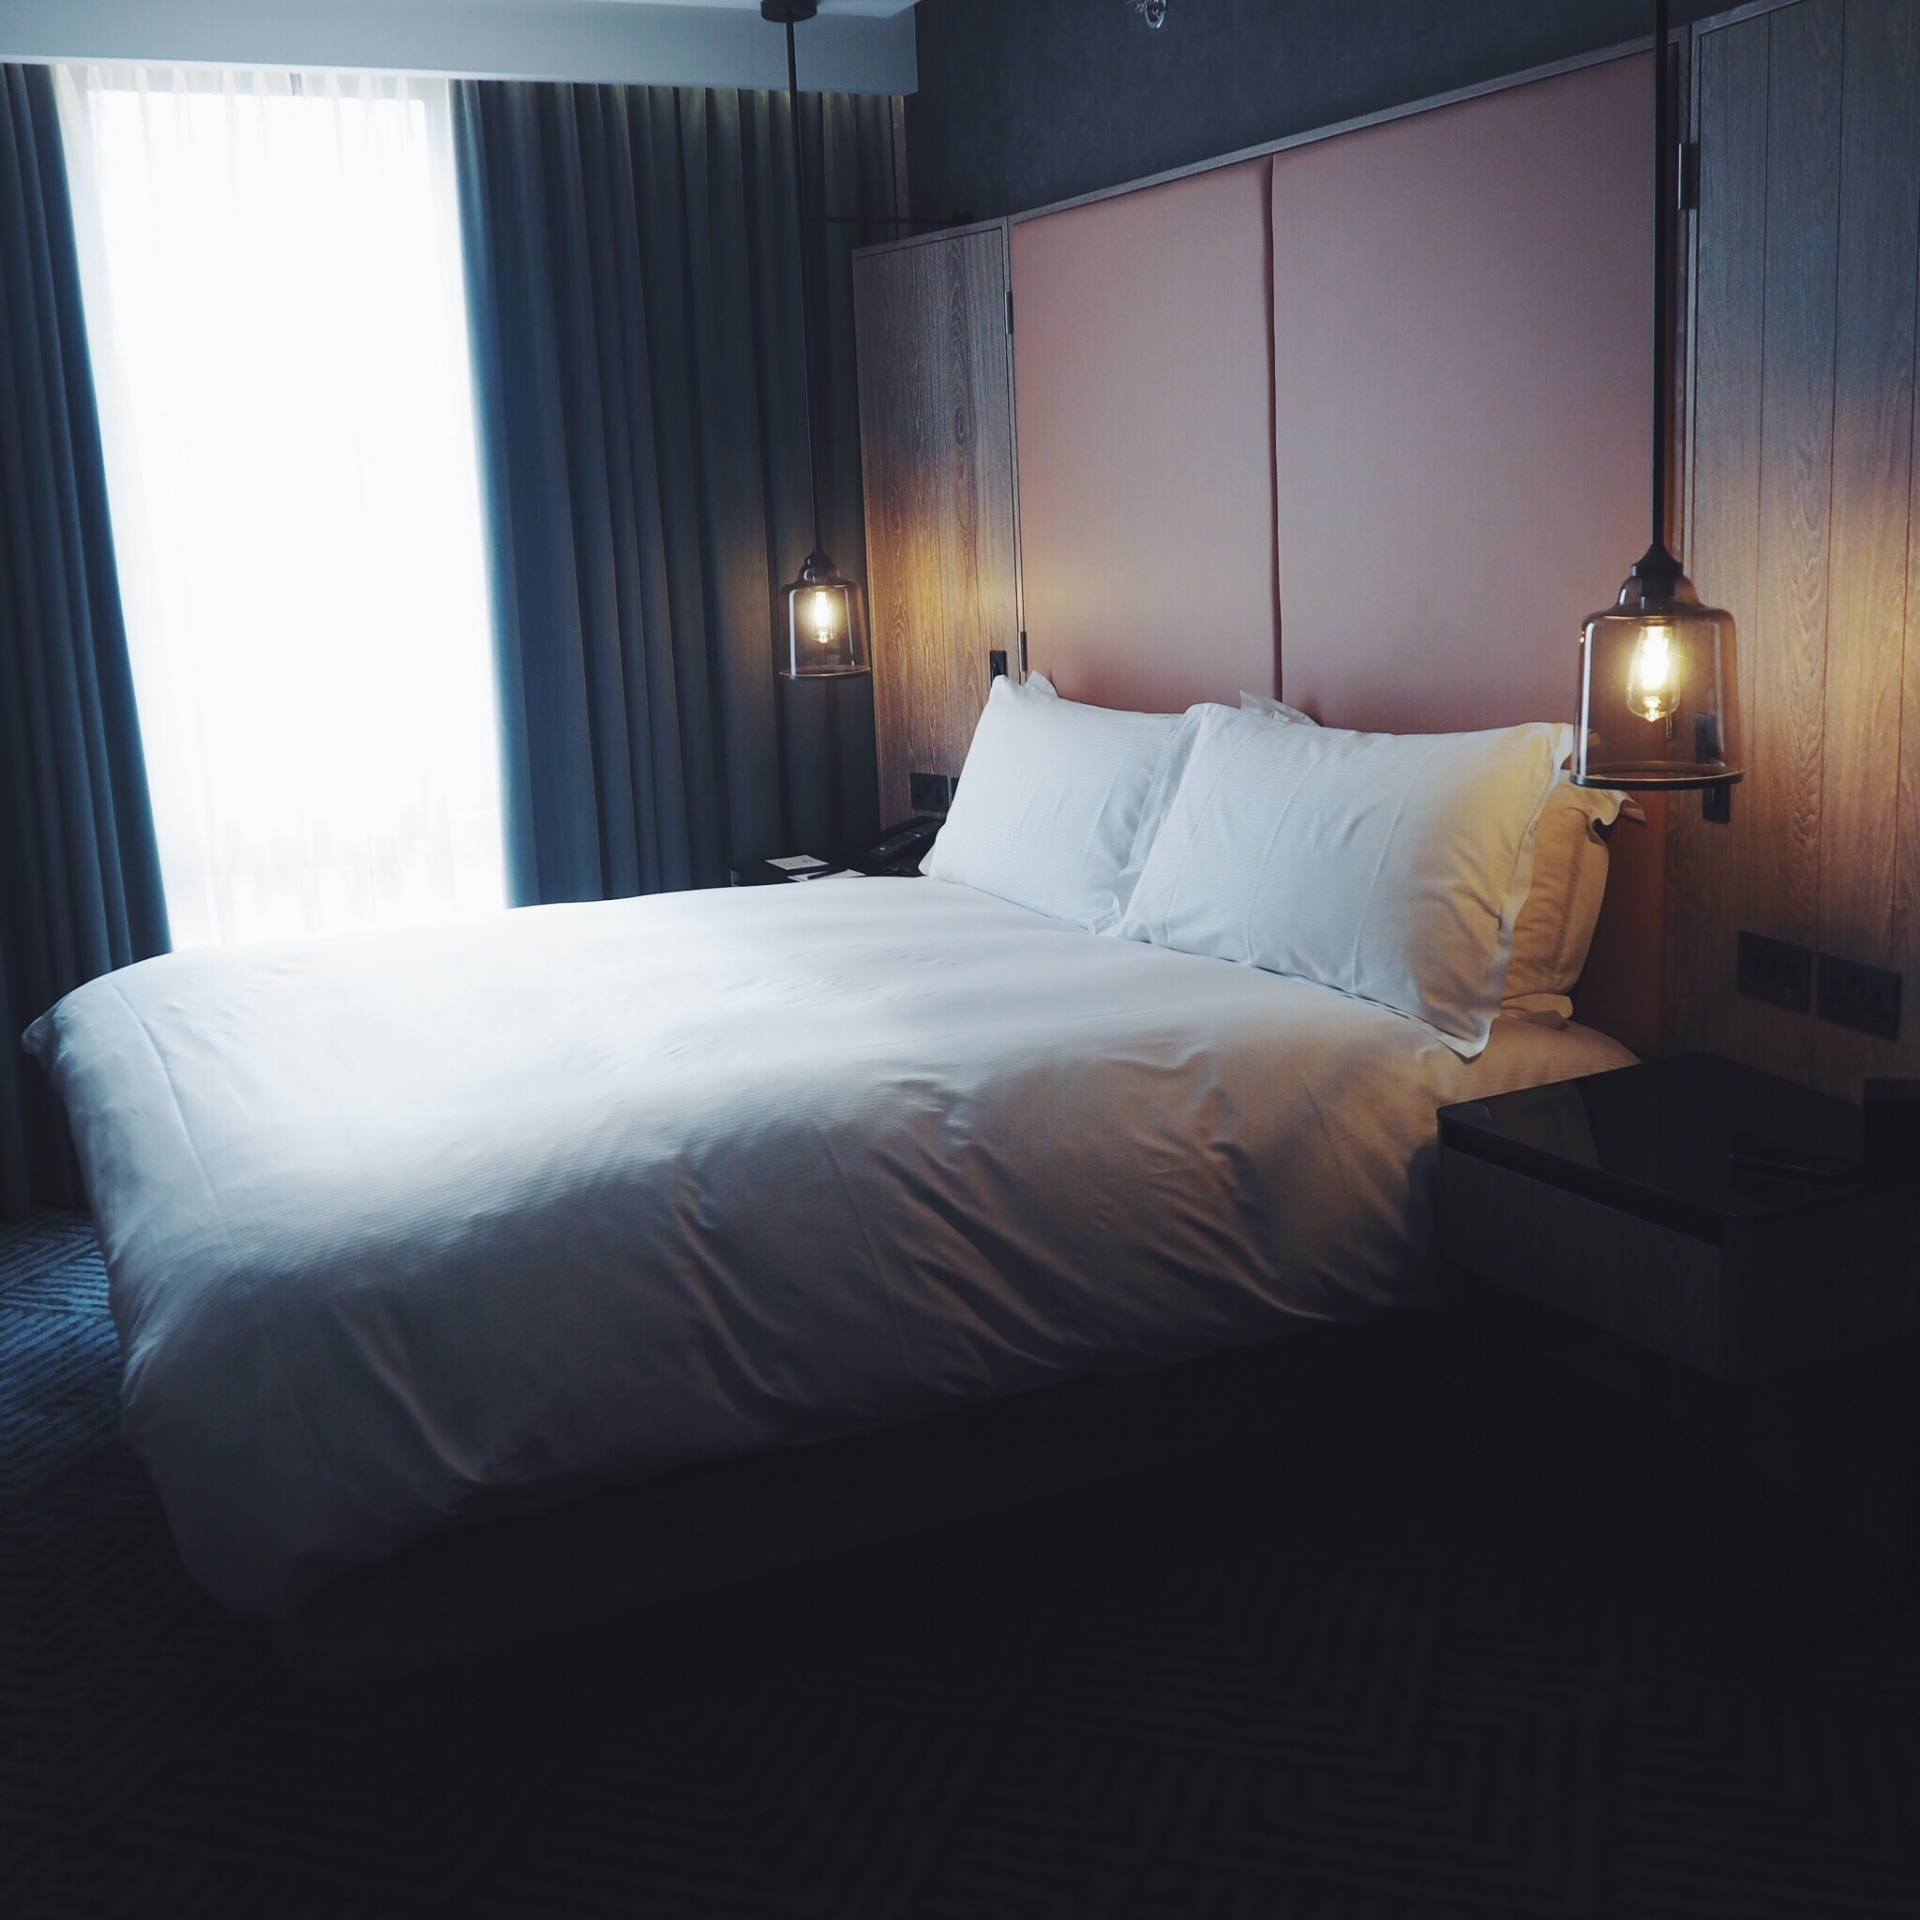 Serenity bed at Hilton London Bankside